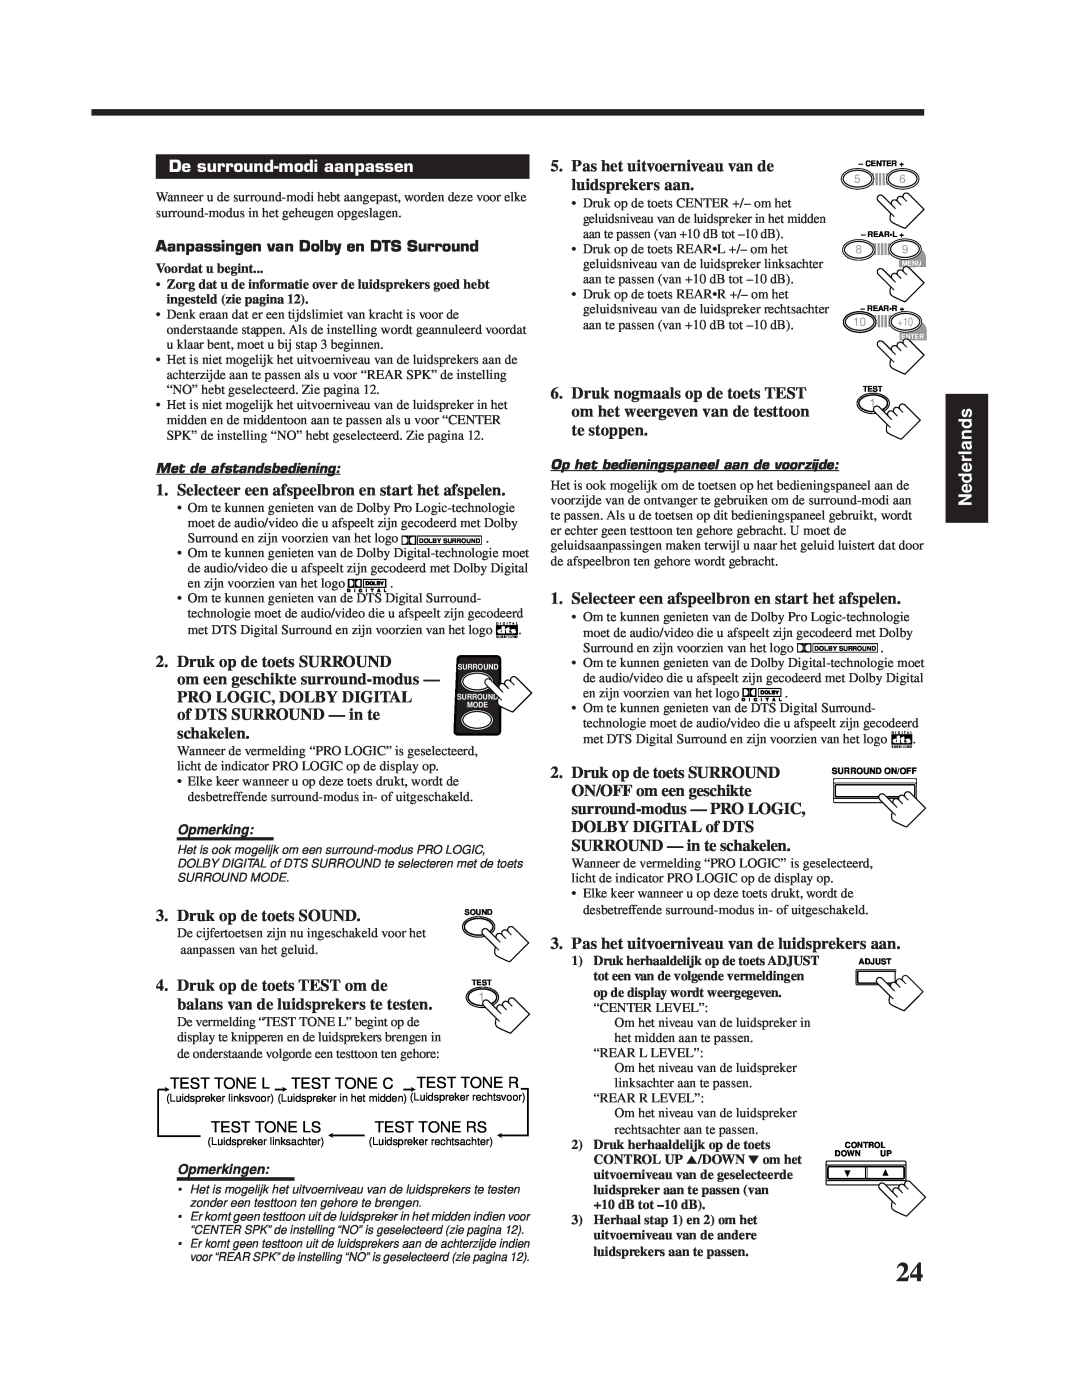 JVC RX-6010RBK manual De surround-modiaanpassen, Nederlands, Pas het uitvoerniveau van de luidsprekers aan 